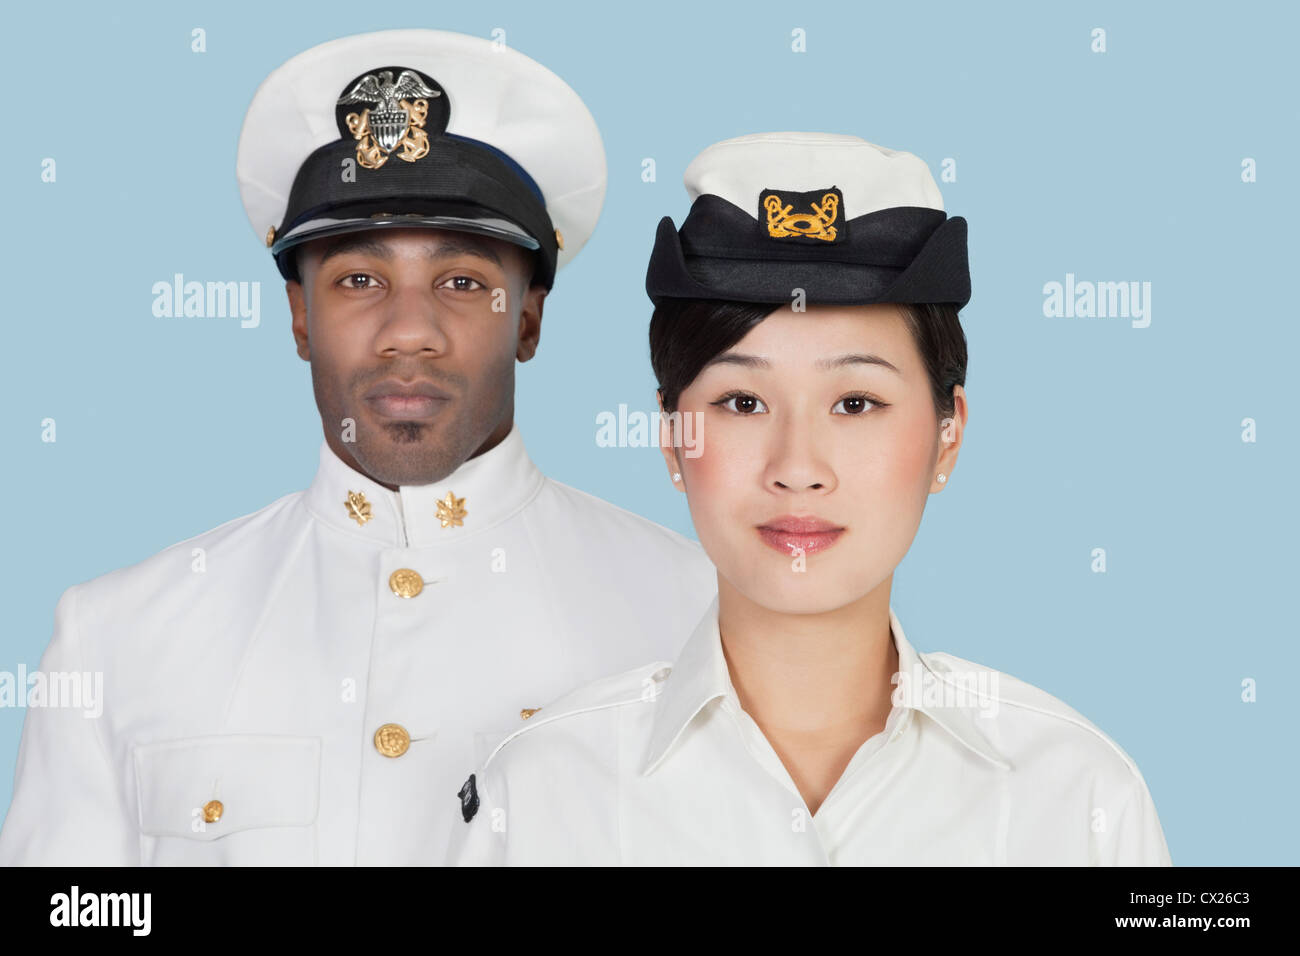 Portrait de deux officiers de l'US Navy ethniques sur fond bleu clair Banque D'Images